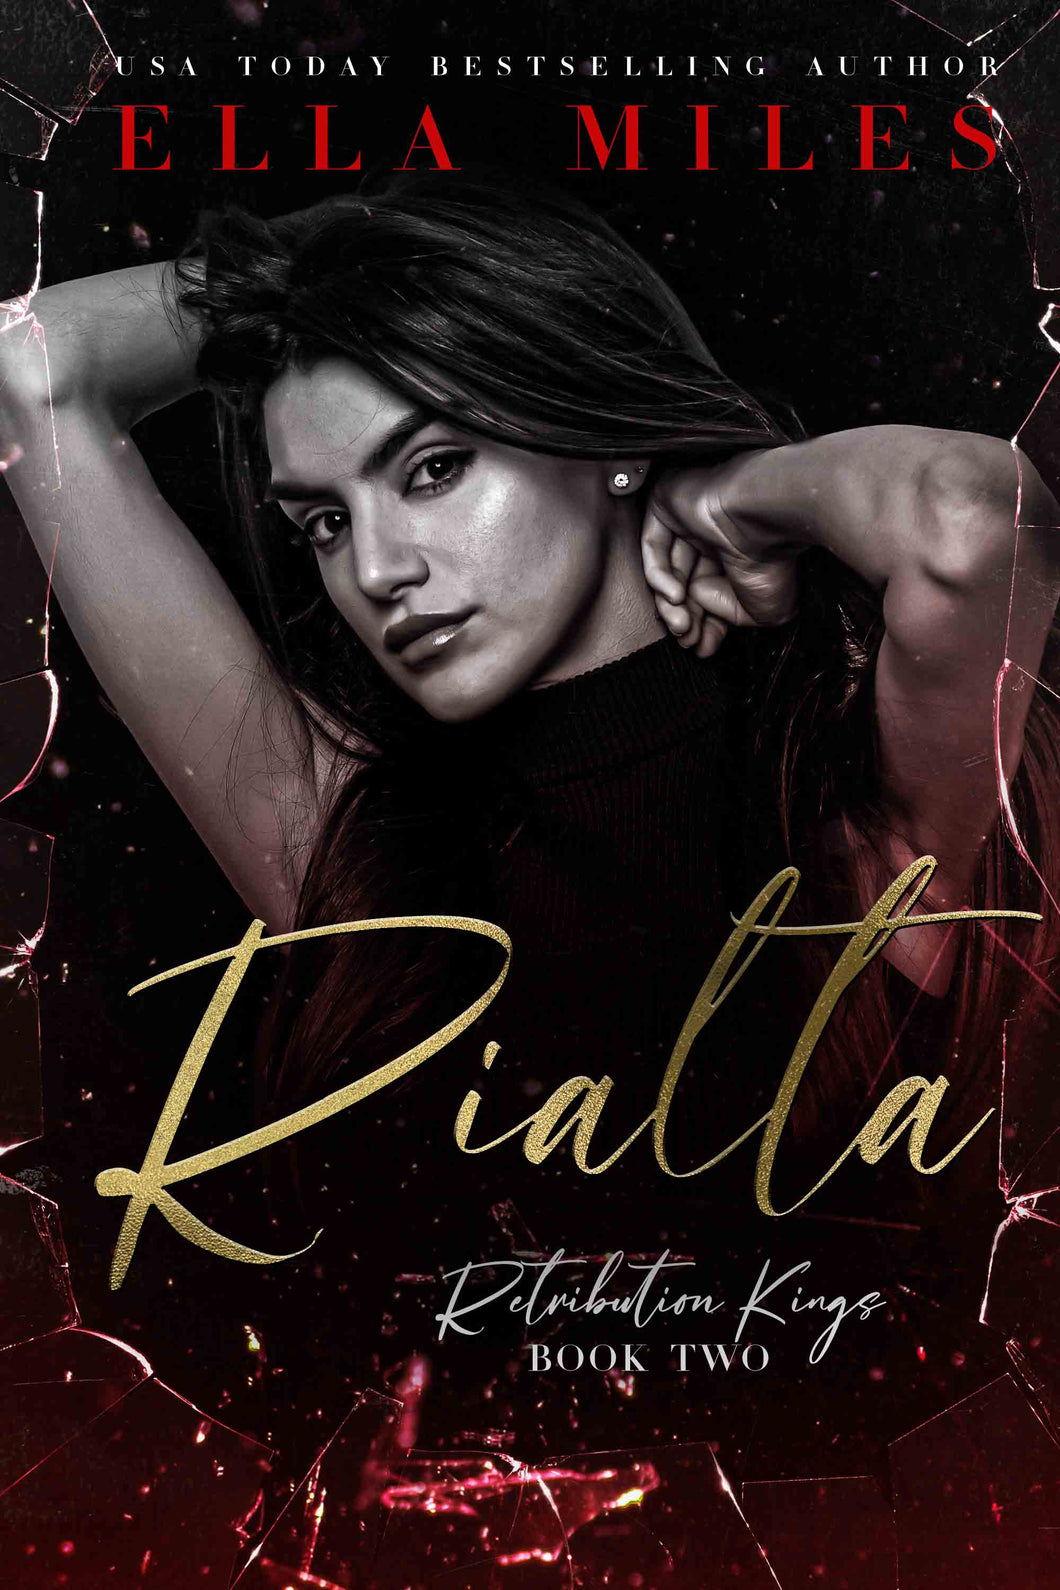 Rialta (Retribution Kings #2)